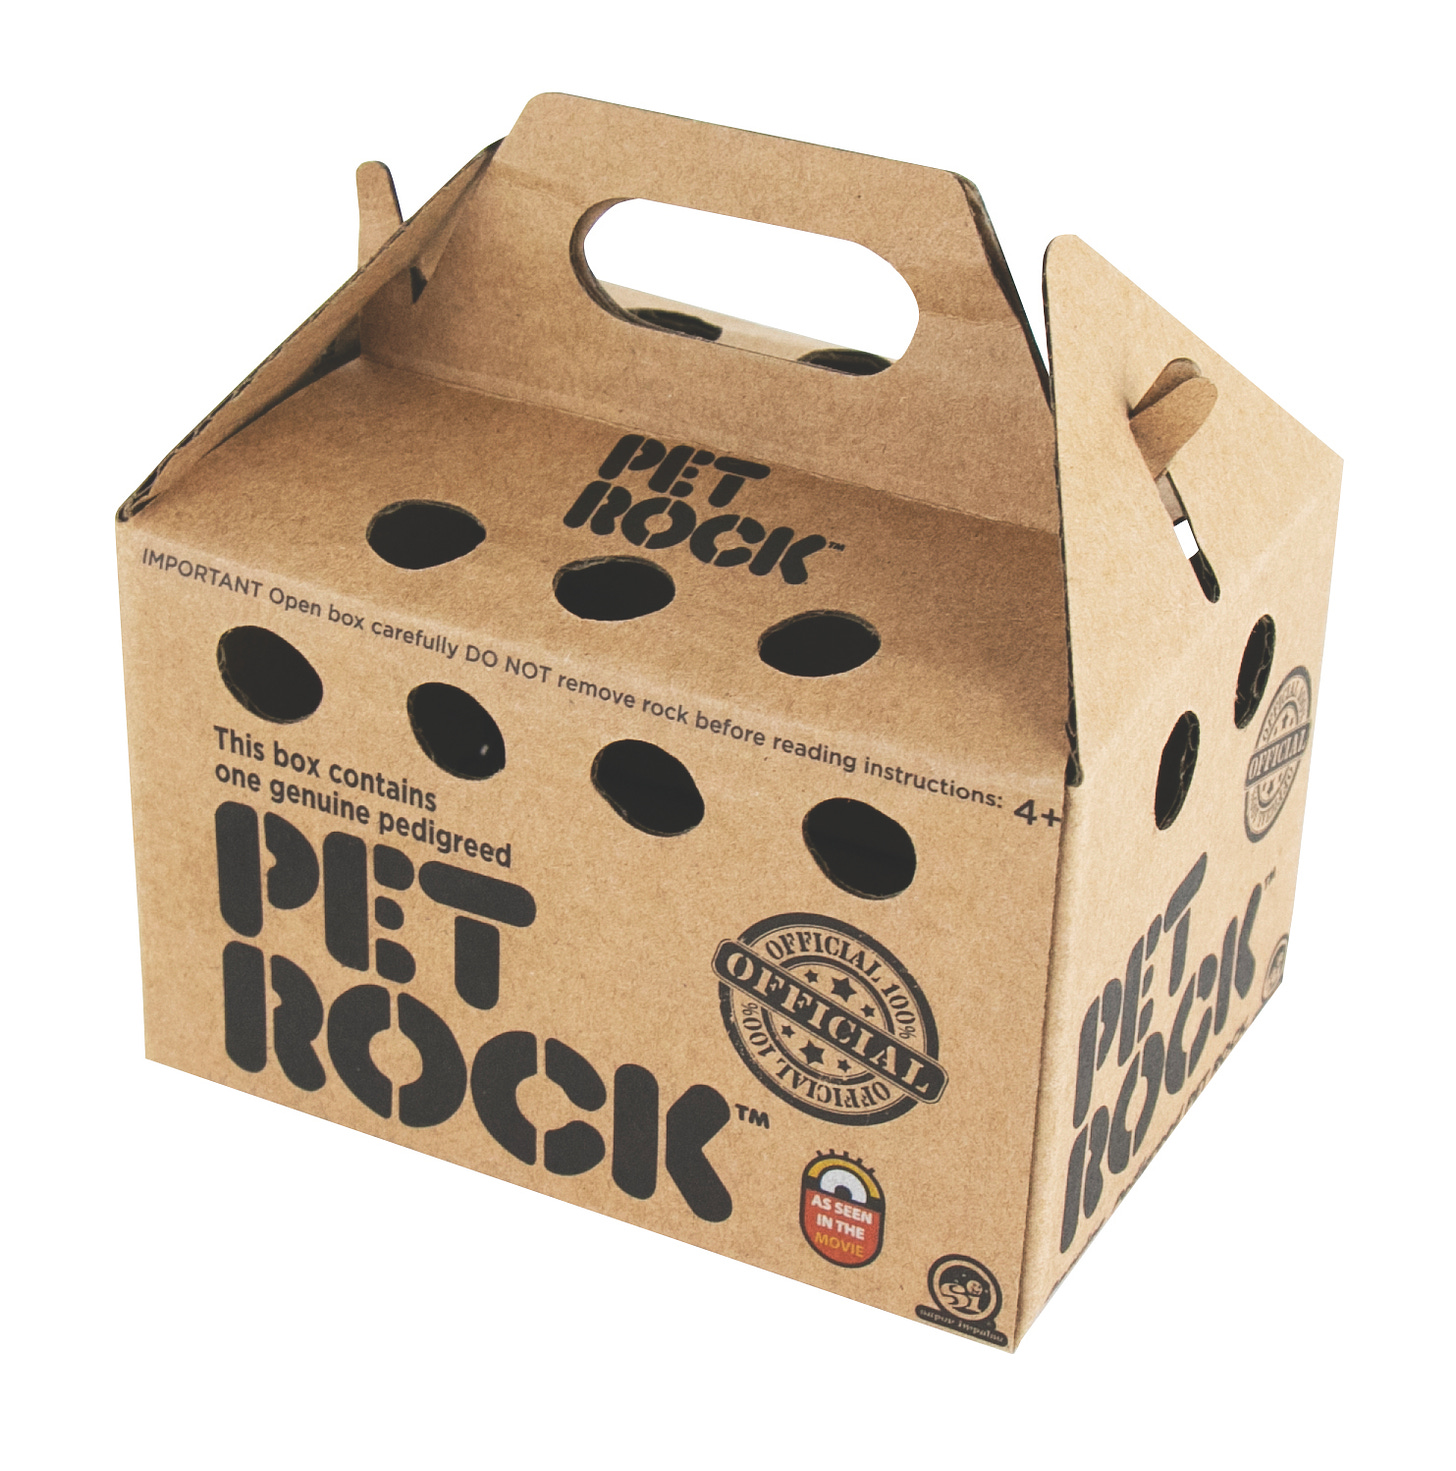 The Original Pet Rock - ScientificsOnline.com